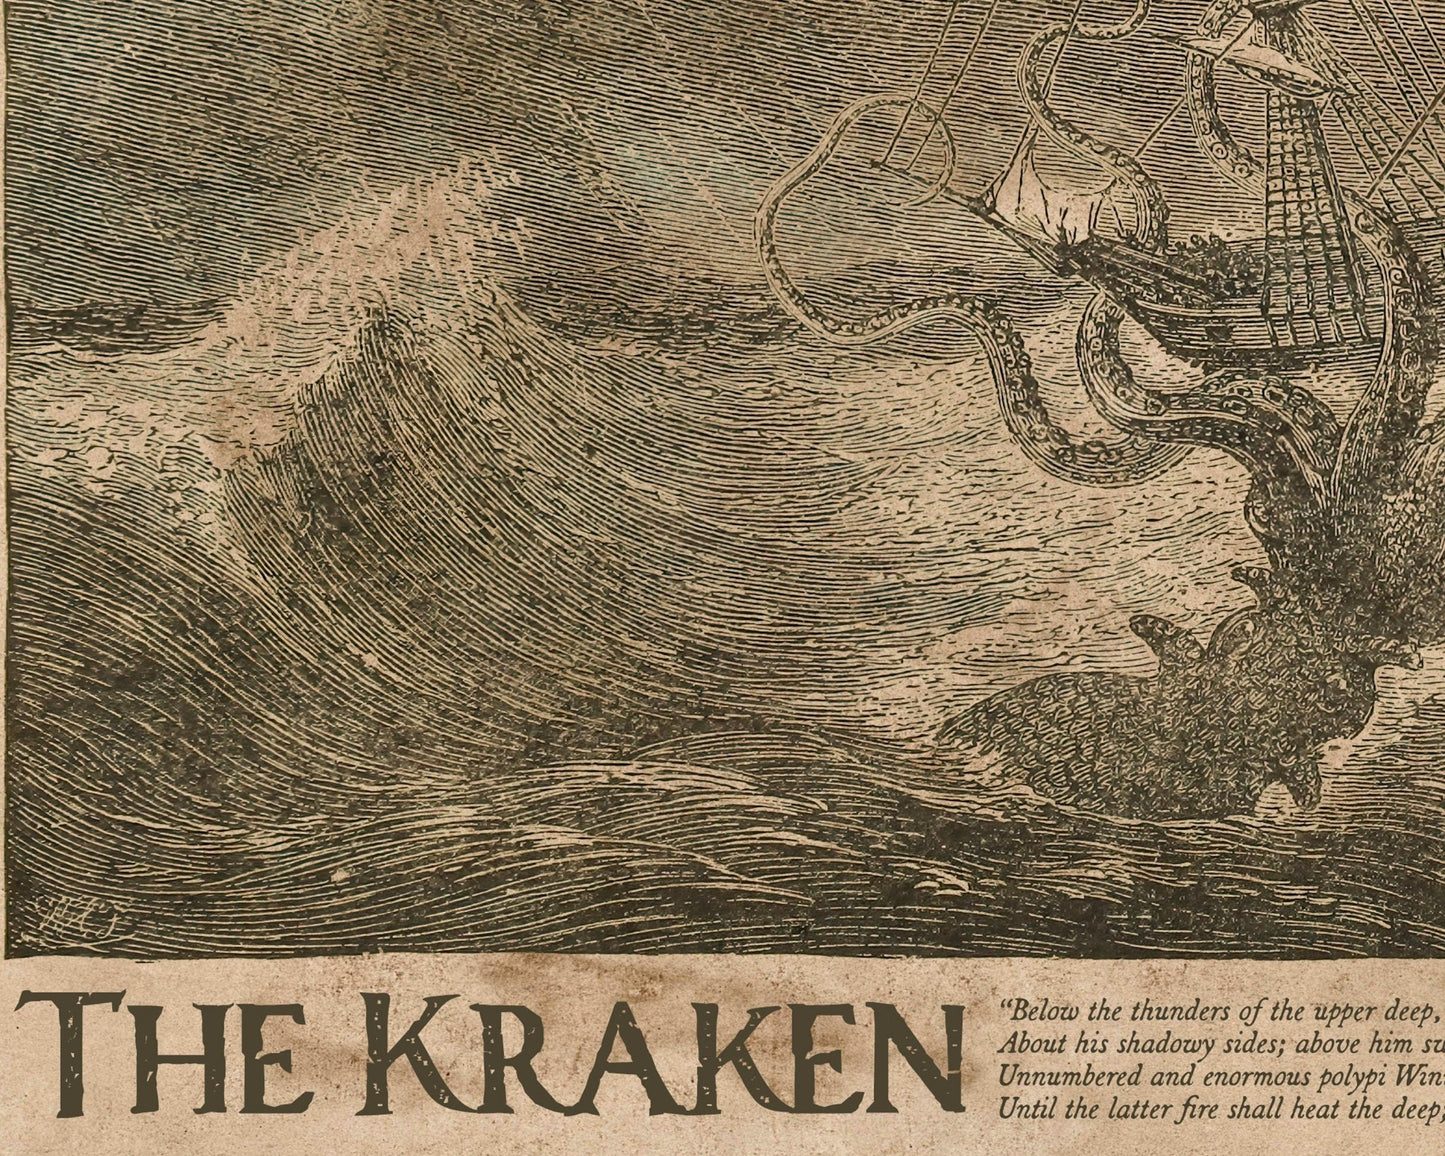 Vintage Illustration "The Kraken" (c.1887) - Mabon Gallery